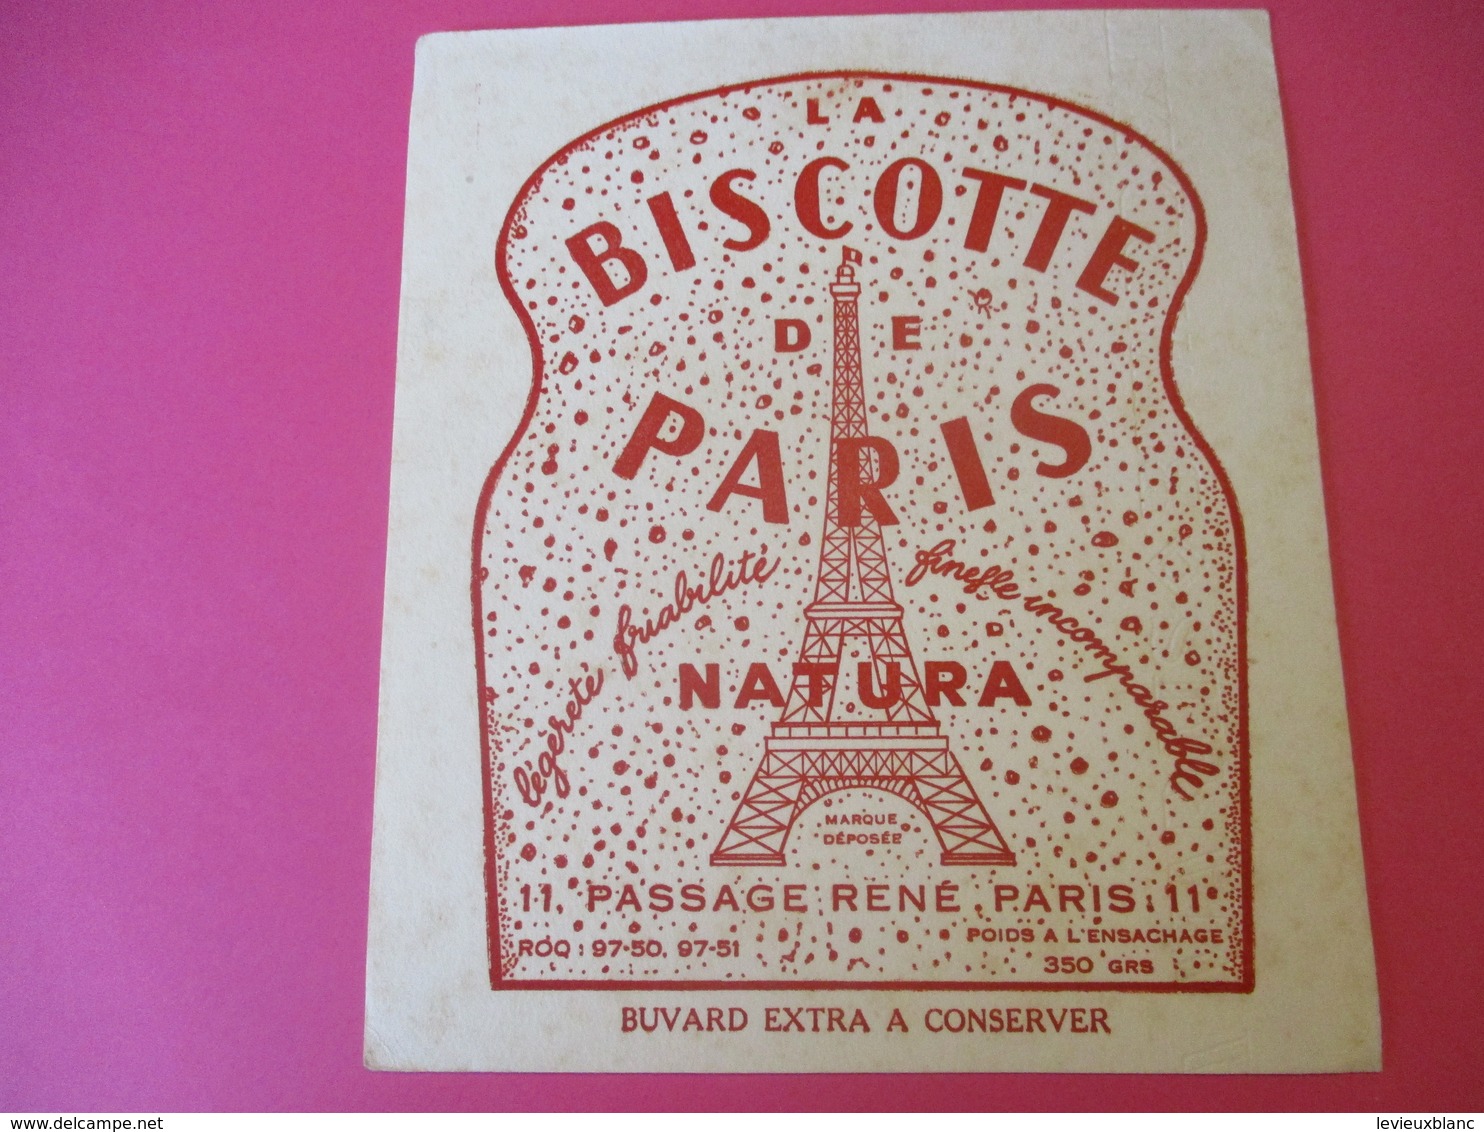 Buvard/La Biscotte De PARIS/NATURA/Légéreté Friabilité/Finesse Incomparable/Passage René/PARIS/Vers 1940-1960 BUV383 - Biscottes